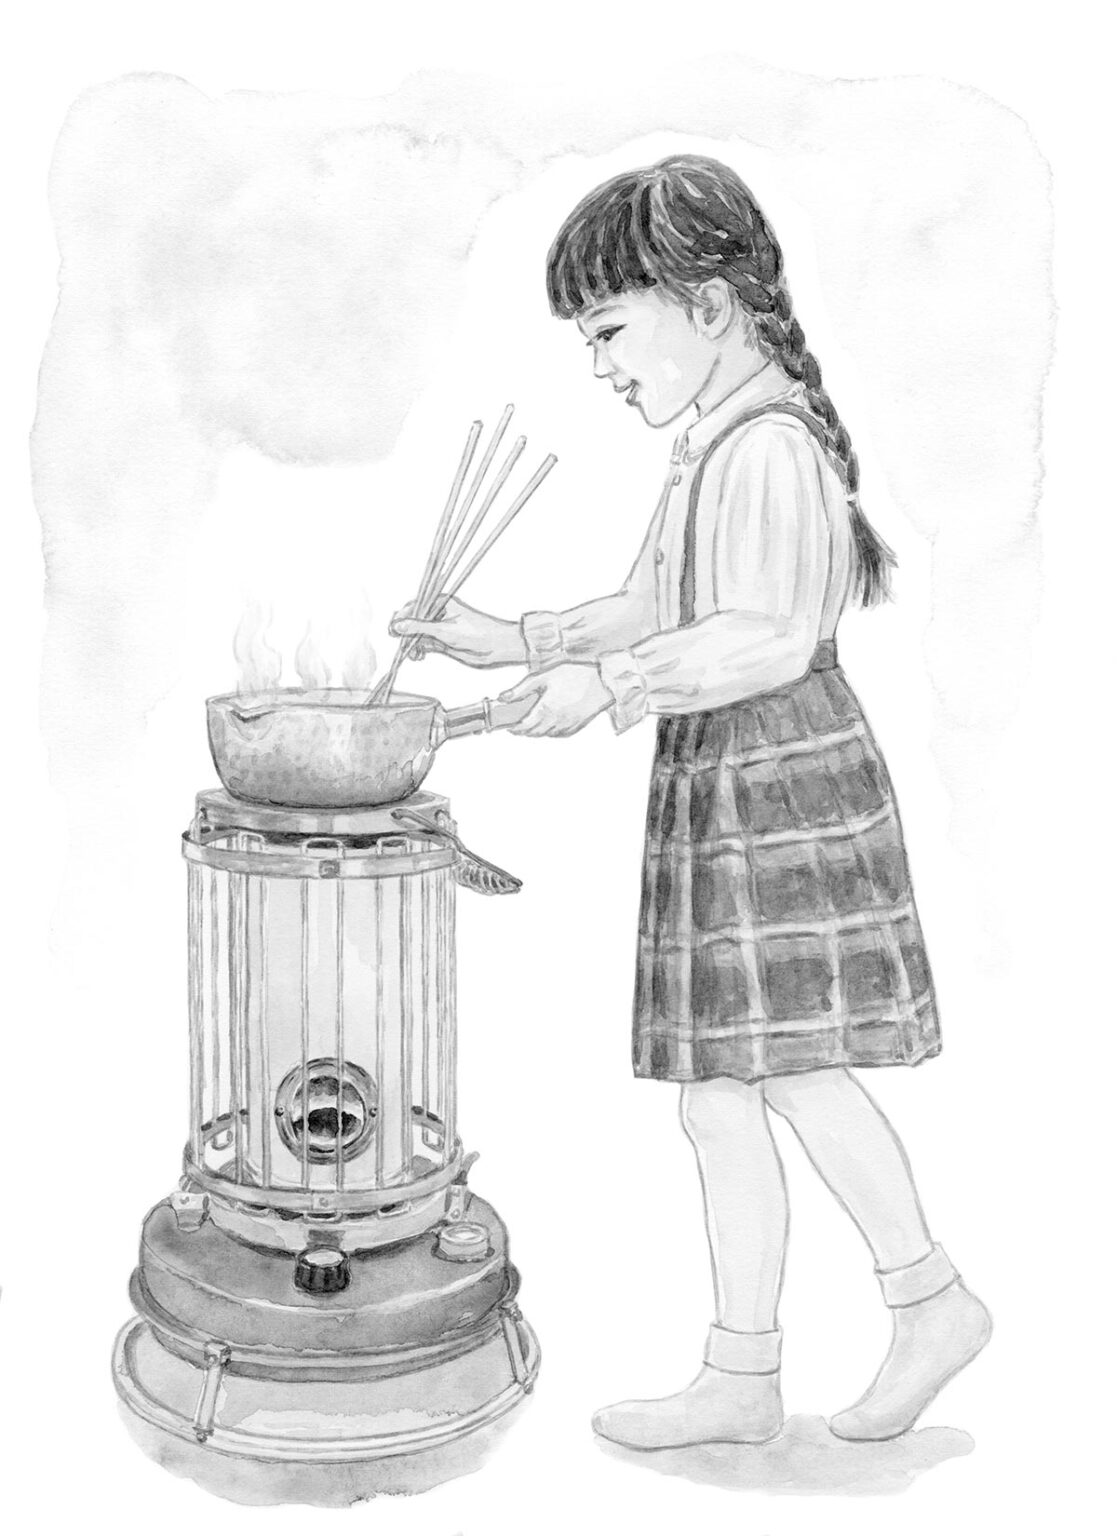 小さいときは、台所のコンロより高さが合う石油ストーブの上で料理をしていた。水が透明になるまで米を研ぐのも阿川さんの大事なお仕事だった。